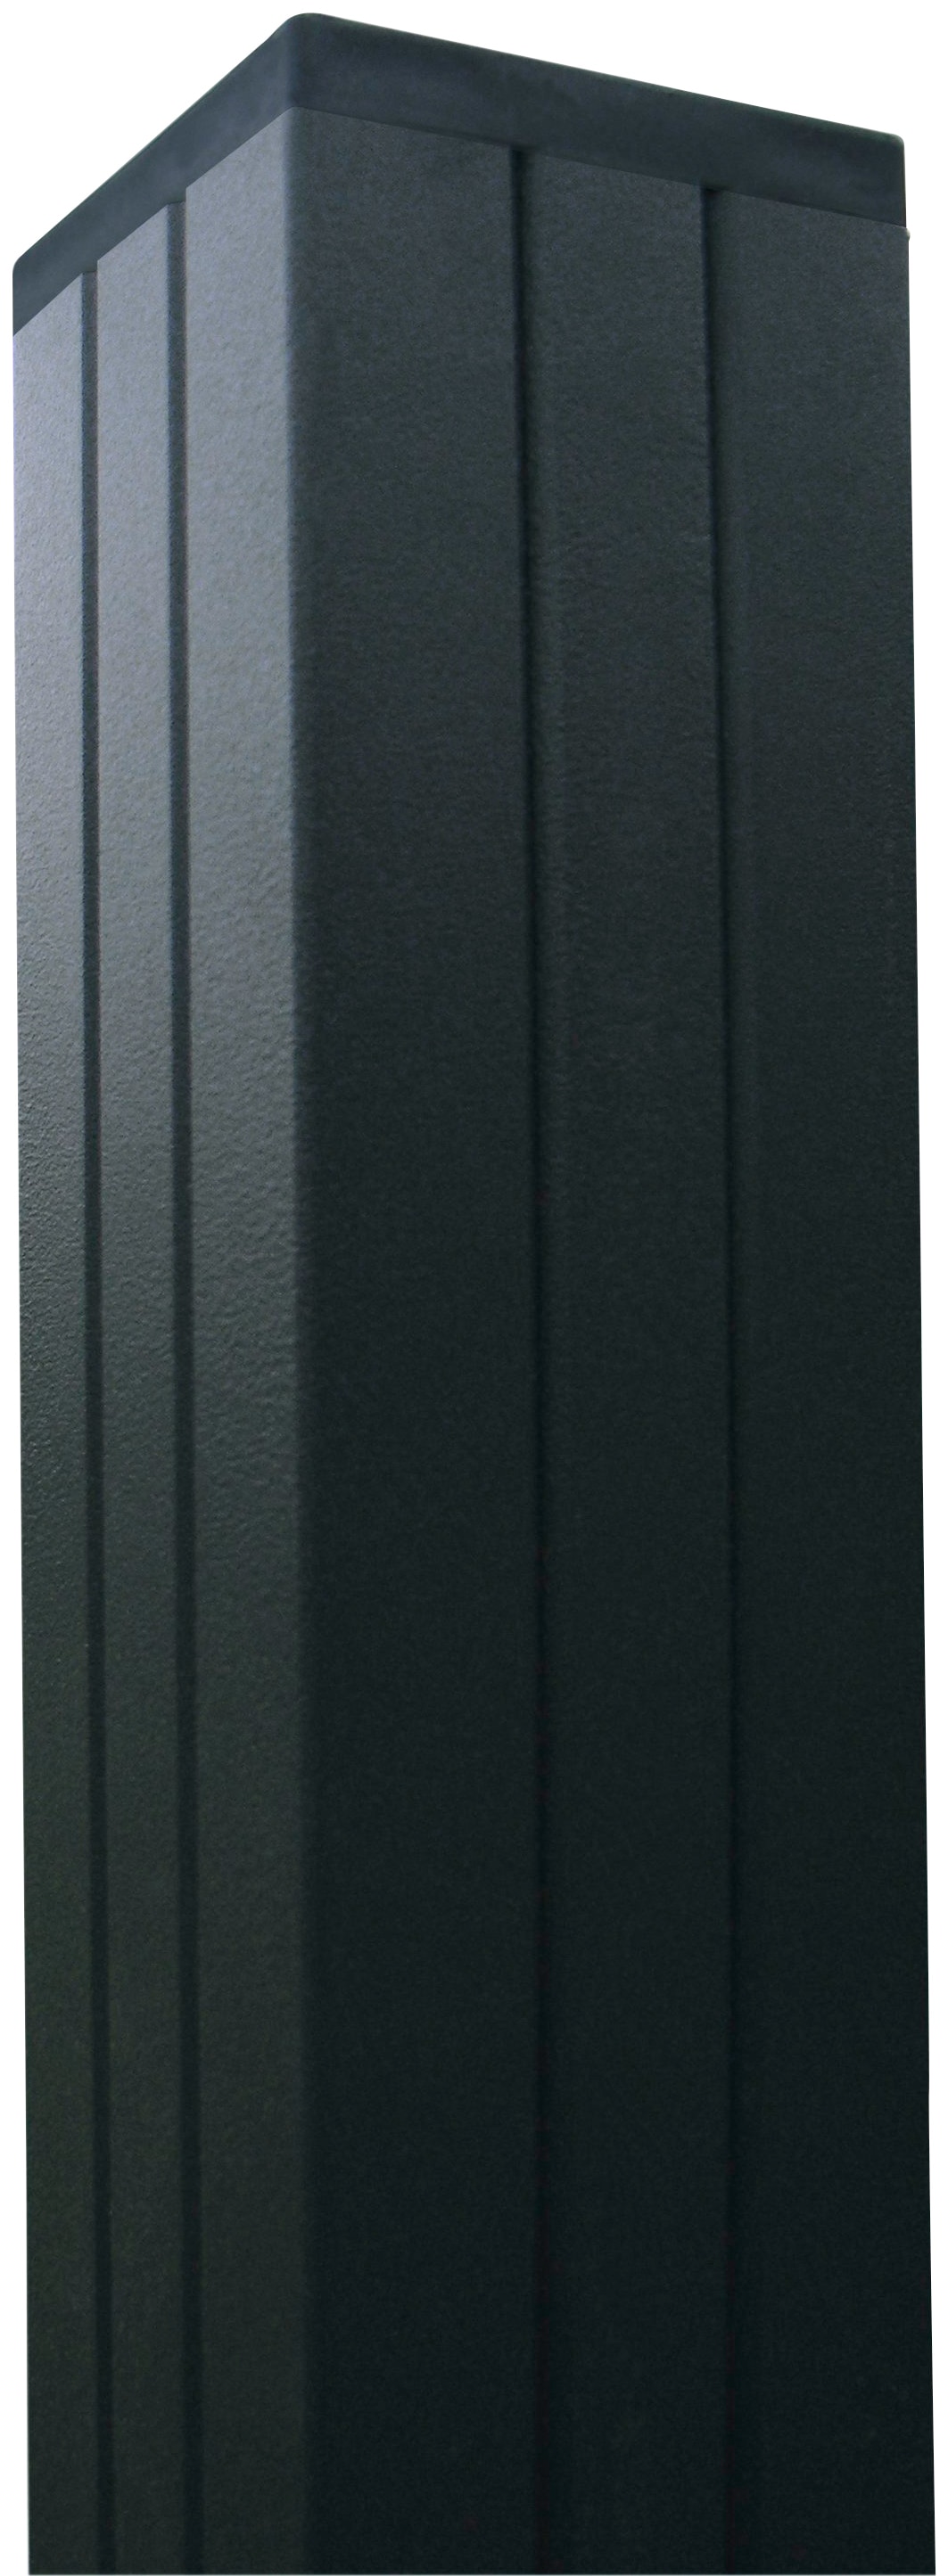 Kiehn-Holz Sichtschutzelement, LxH: 180x180 cm, Pfosten zum Einbetonieren